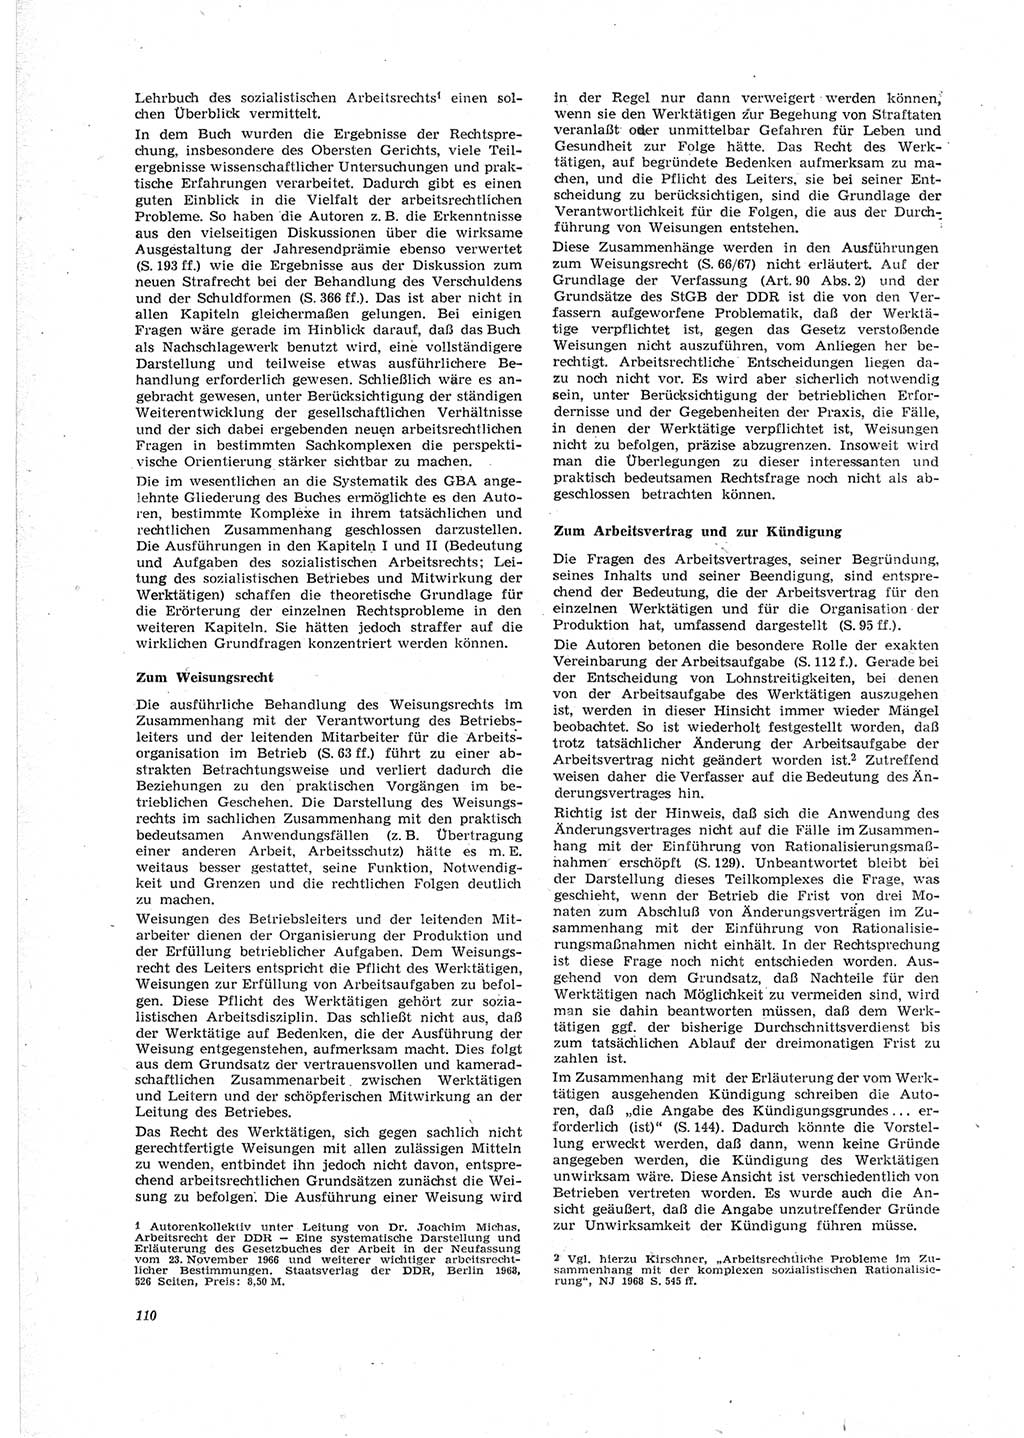 Neue Justiz (NJ), Zeitschrift für Recht und Rechtswissenschaft [Deutsche Demokratische Republik (DDR)], 23. Jahrgang 1969, Seite 110 (NJ DDR 1969, S. 110)